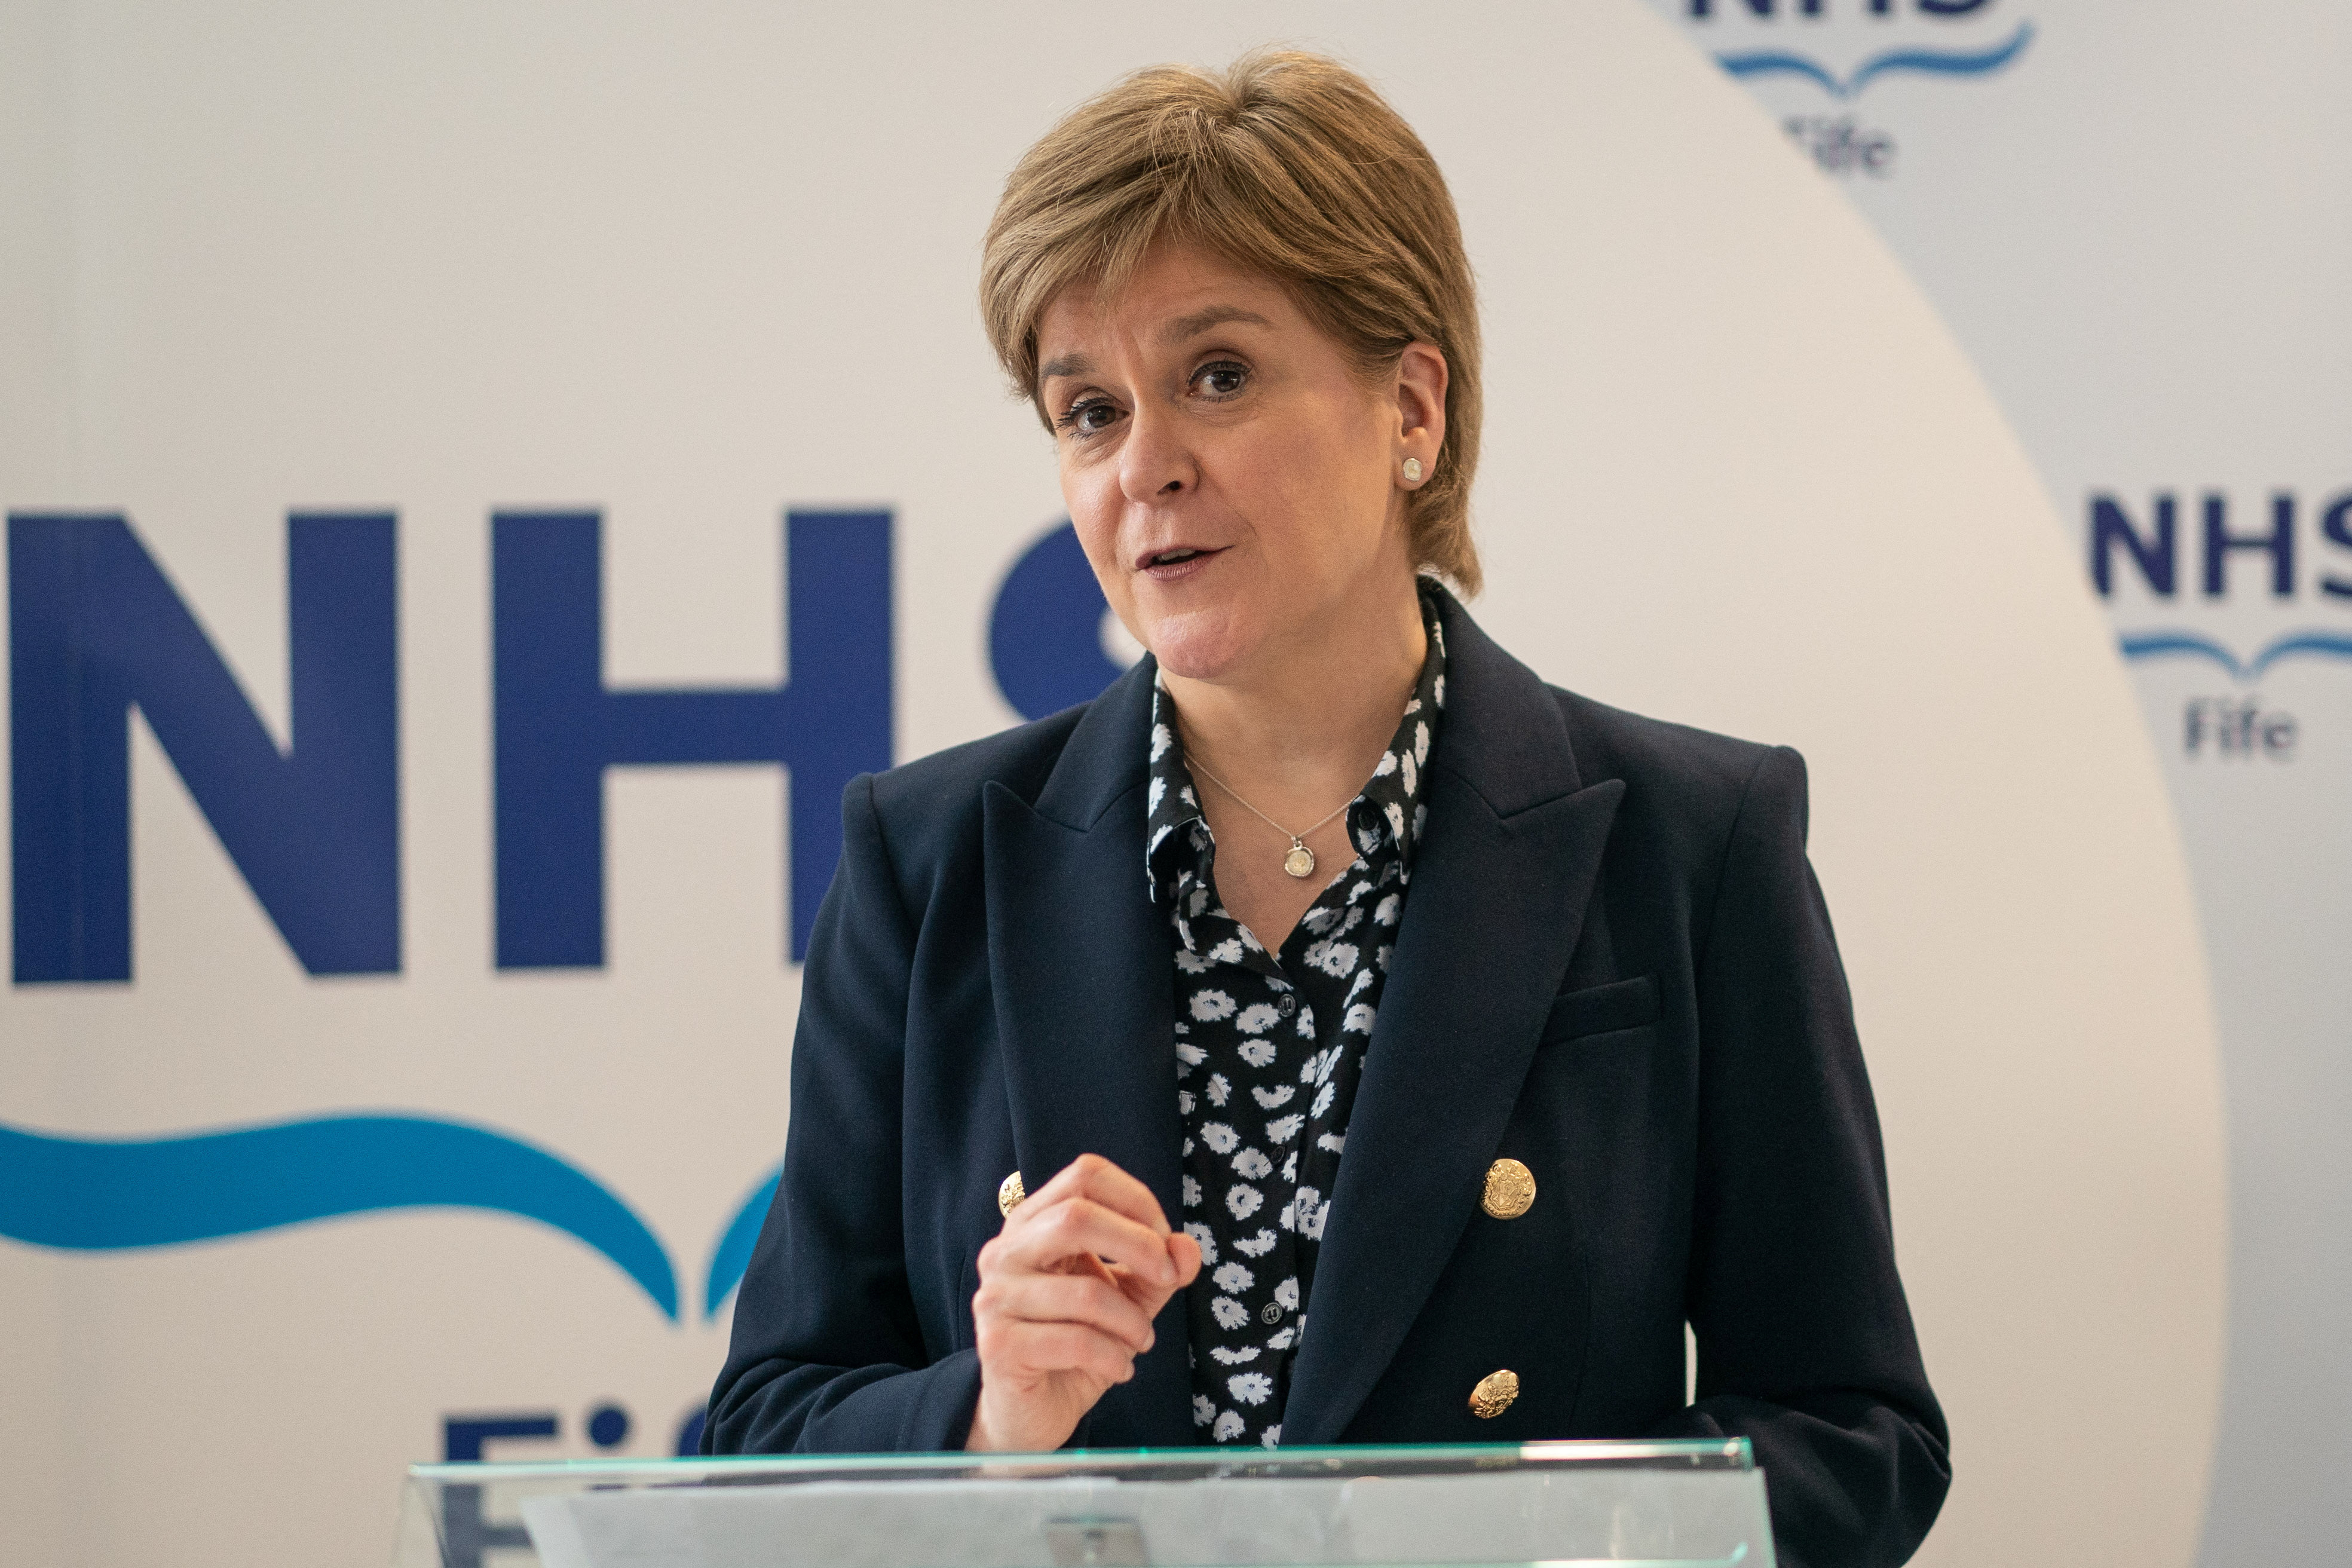 La primera ministra saliente, Nicola Sturgeon, dimitió inesperadamente el mes pasado tras ocho años al frente del partido y del gobierno semiautónomo de Escocia. (Peter Summers/REUTERS)